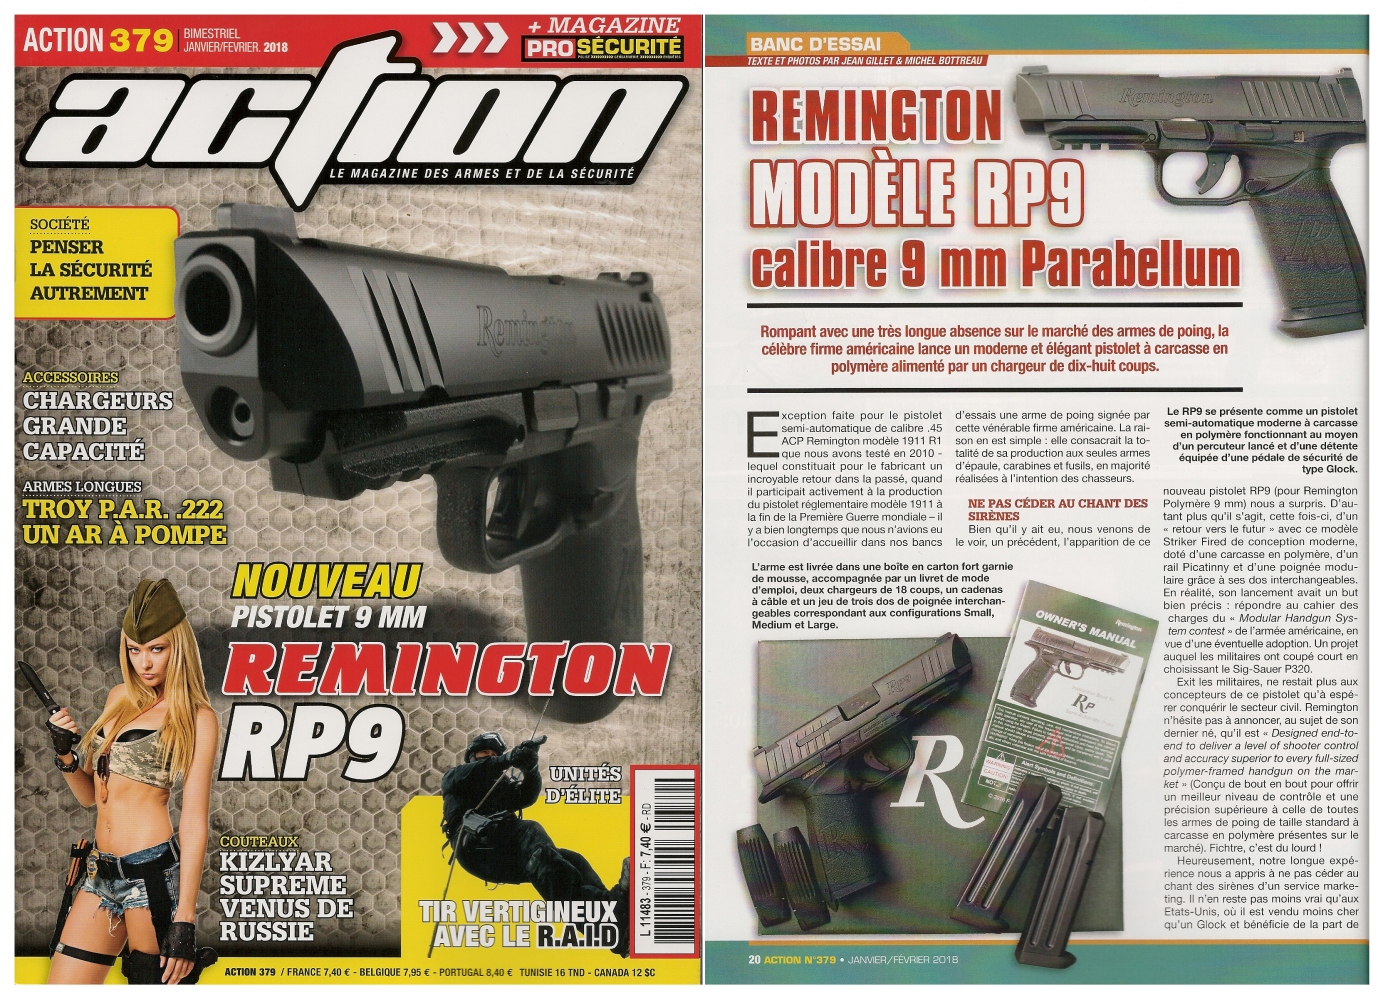 Le banc d’essai du pistolet Remington modèle RP9 a été publié sur 6 pages dans le magazine Action n° 379 (janvier/février 2018). 